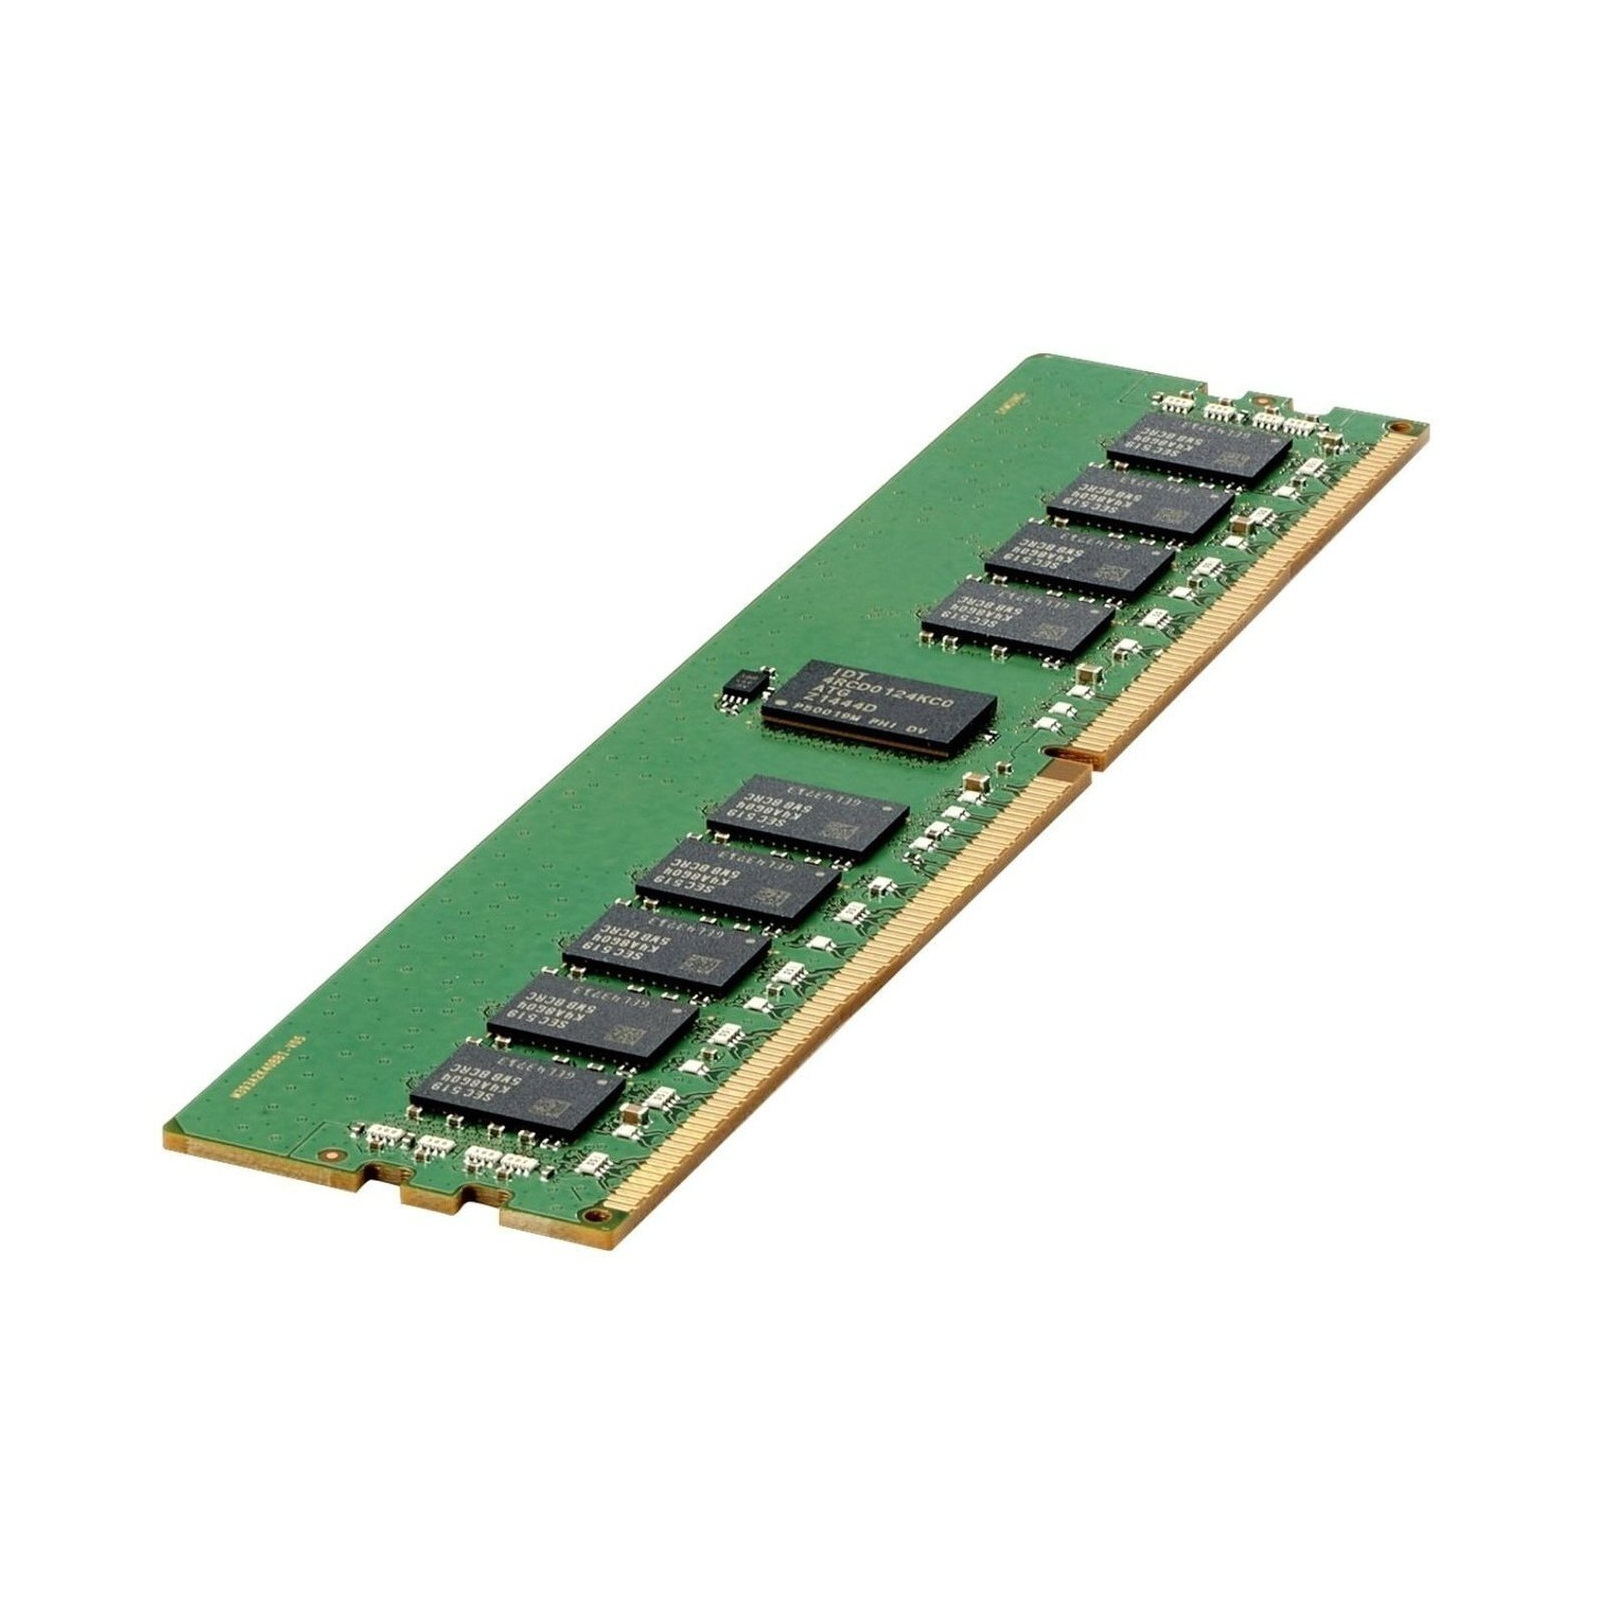 Модуль памяти для сервера HP E 32GB (1x32GB) Dual Rank x4 DDR4-3200 CAS-22-22-22 Registered Smart Memory Kit (P06033-B21)